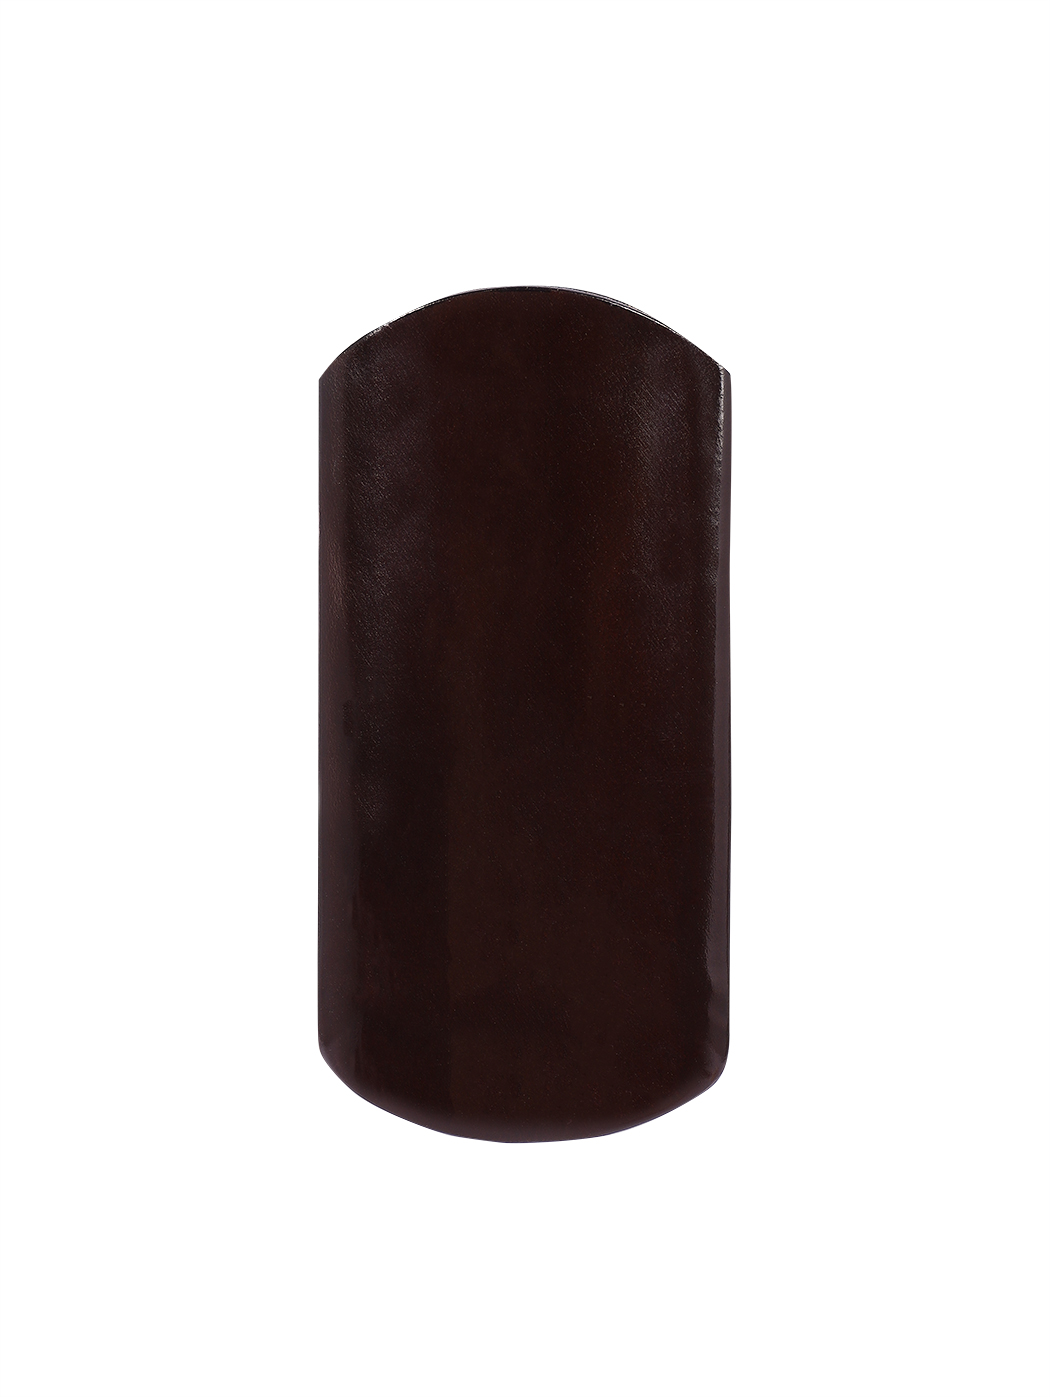 Кожаный футляр для очков ручной работы темно - коричневого цвета